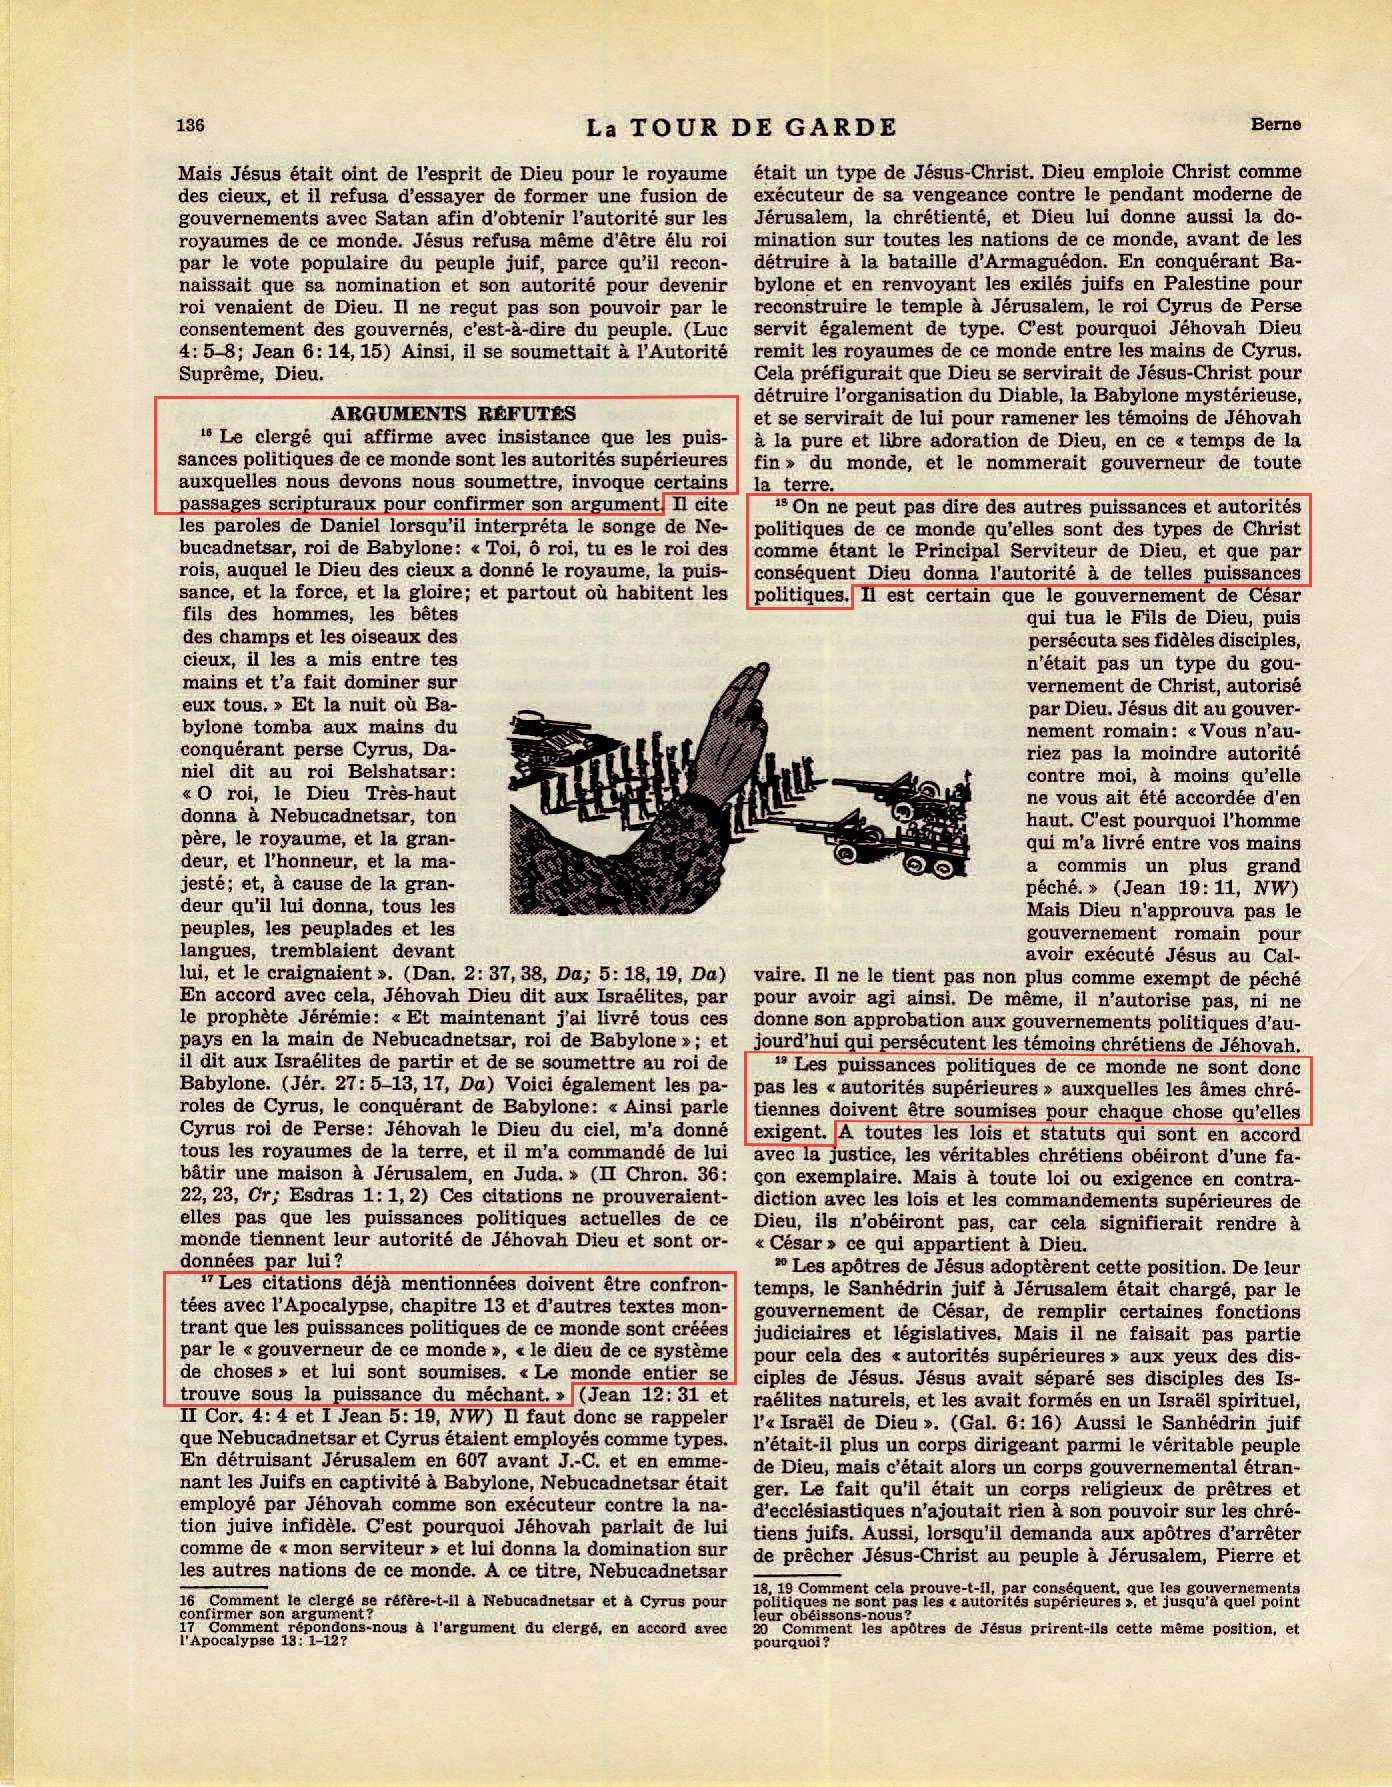 iLes autorités supérieures - Page 2 La-Tour-de-Garde-1-mai-1951-p136